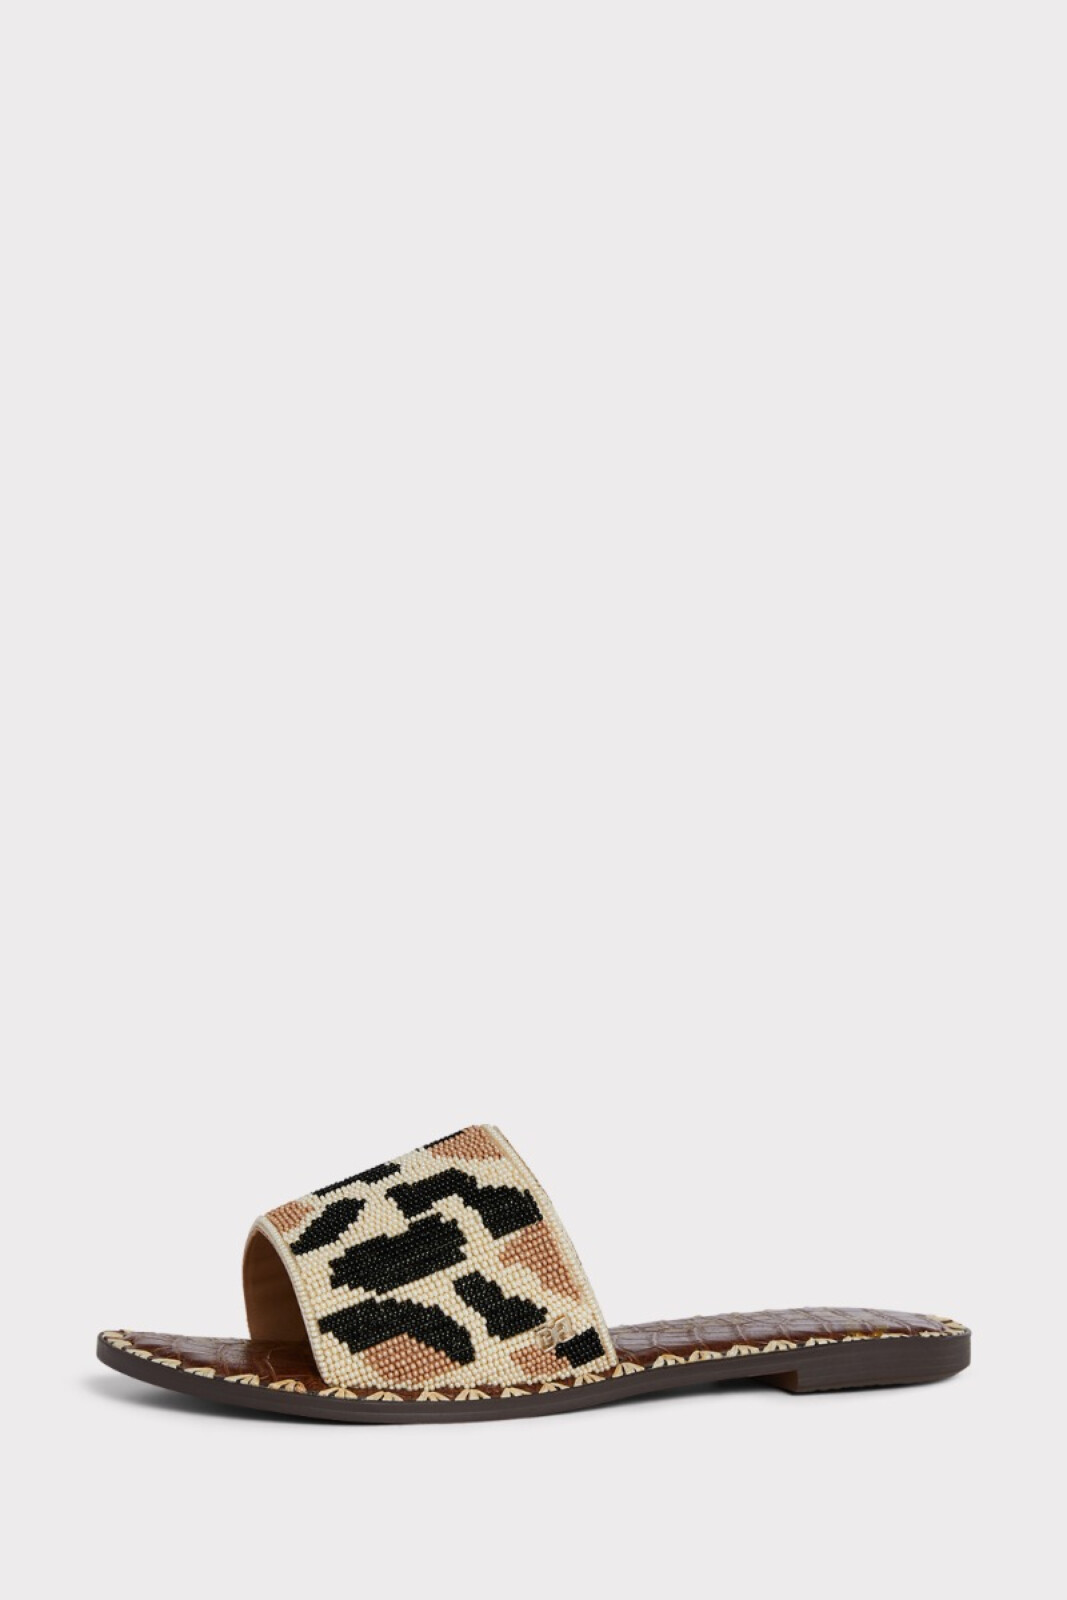 SAM EDELMAN Gunner Leopard Flat Sandal | EVEREVE